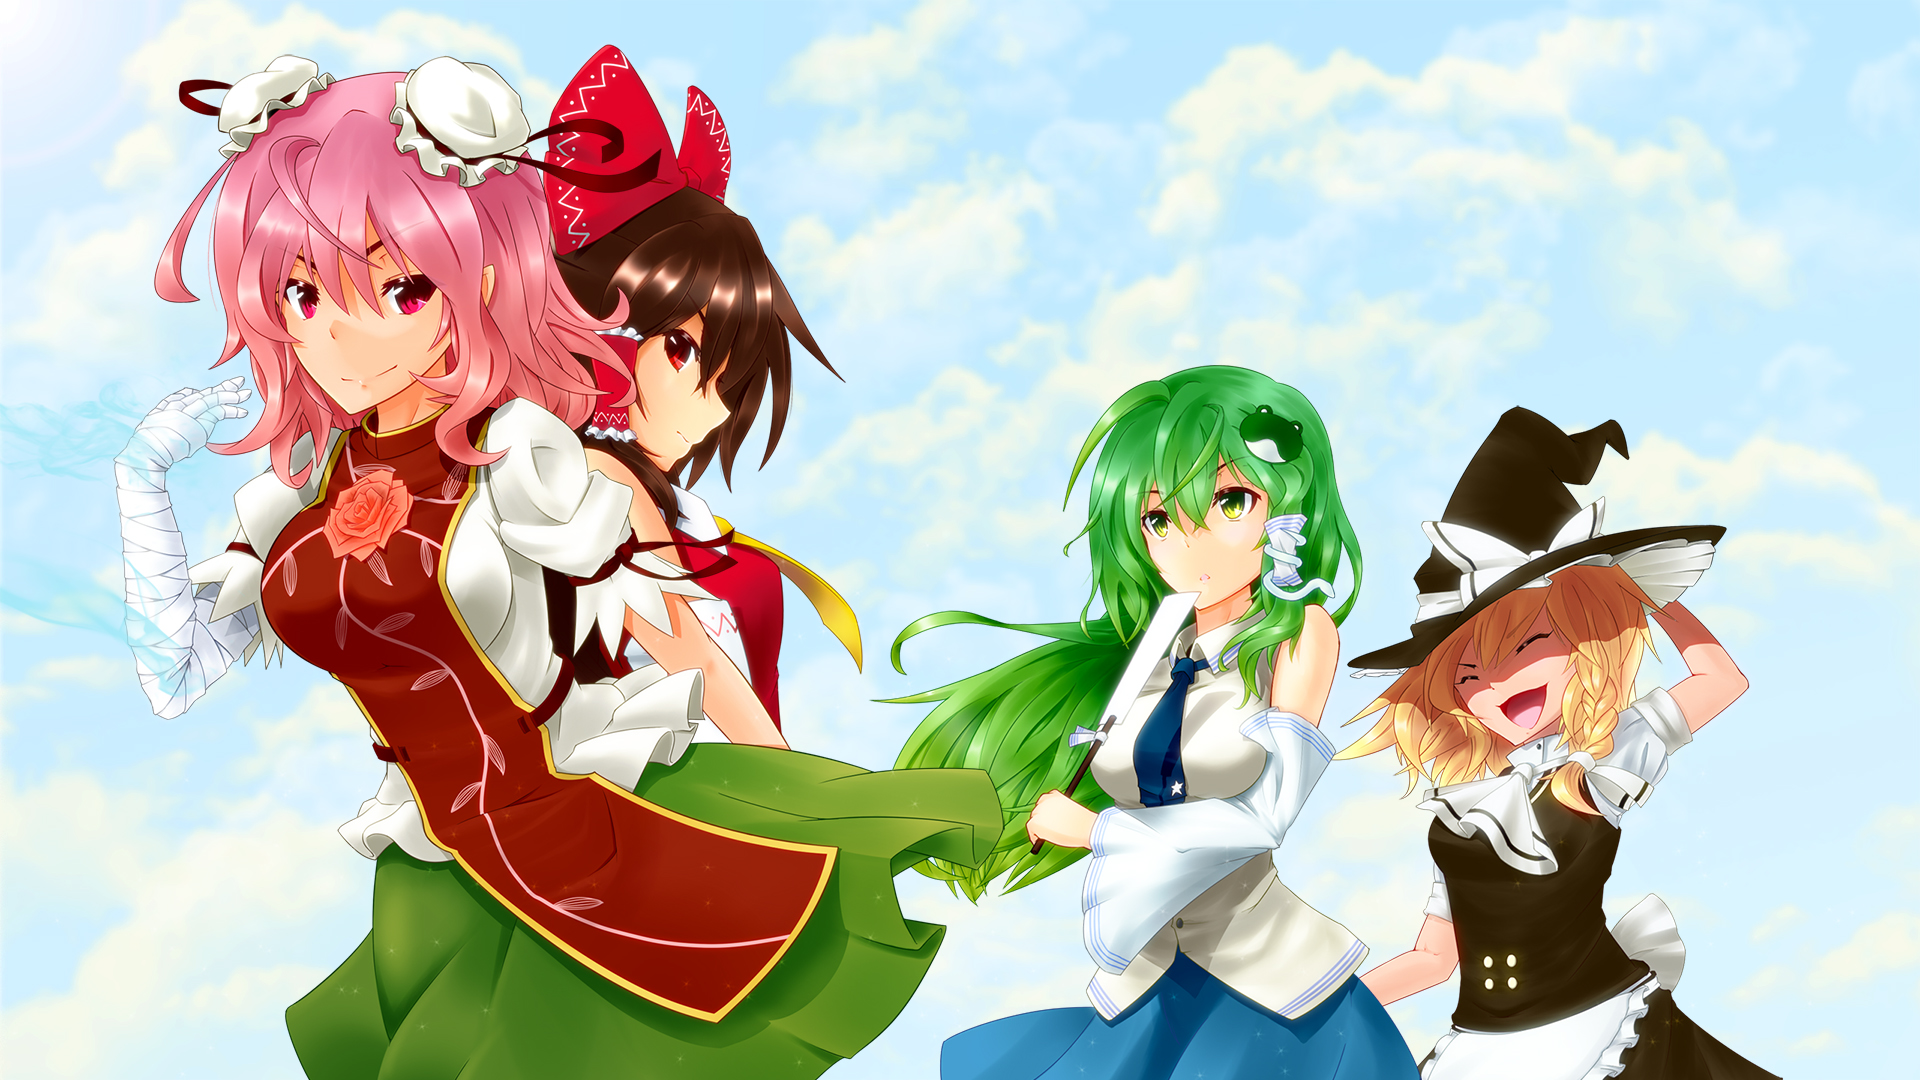 Free download wallpaper Anime, Touhou, Sanae Kochiya, Reimu Hakurei, Marisa Kirisame, Kasen Ibaraki on your PC desktop